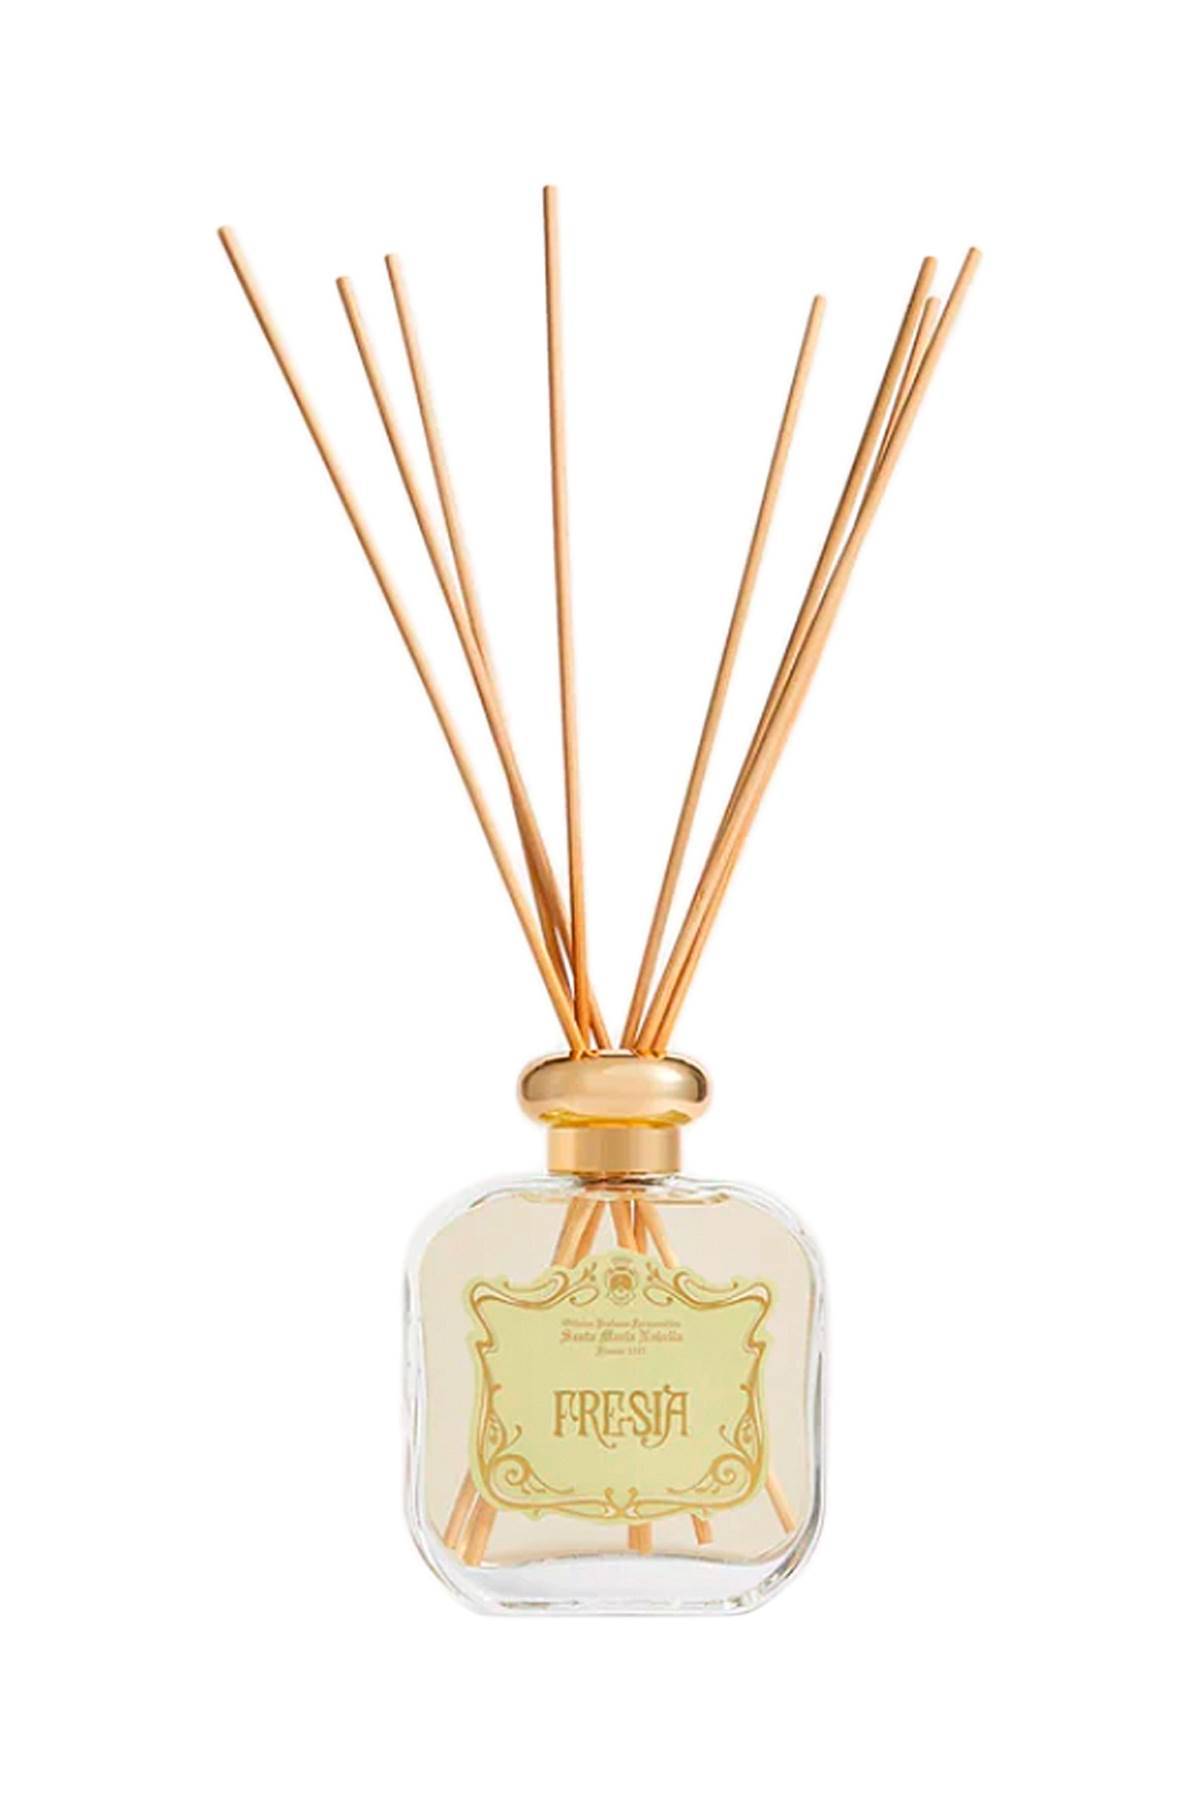 OFFICINA PROFUMO FARMACEUTICA DI S. M.NOV fresia room fragrance - 250 ml